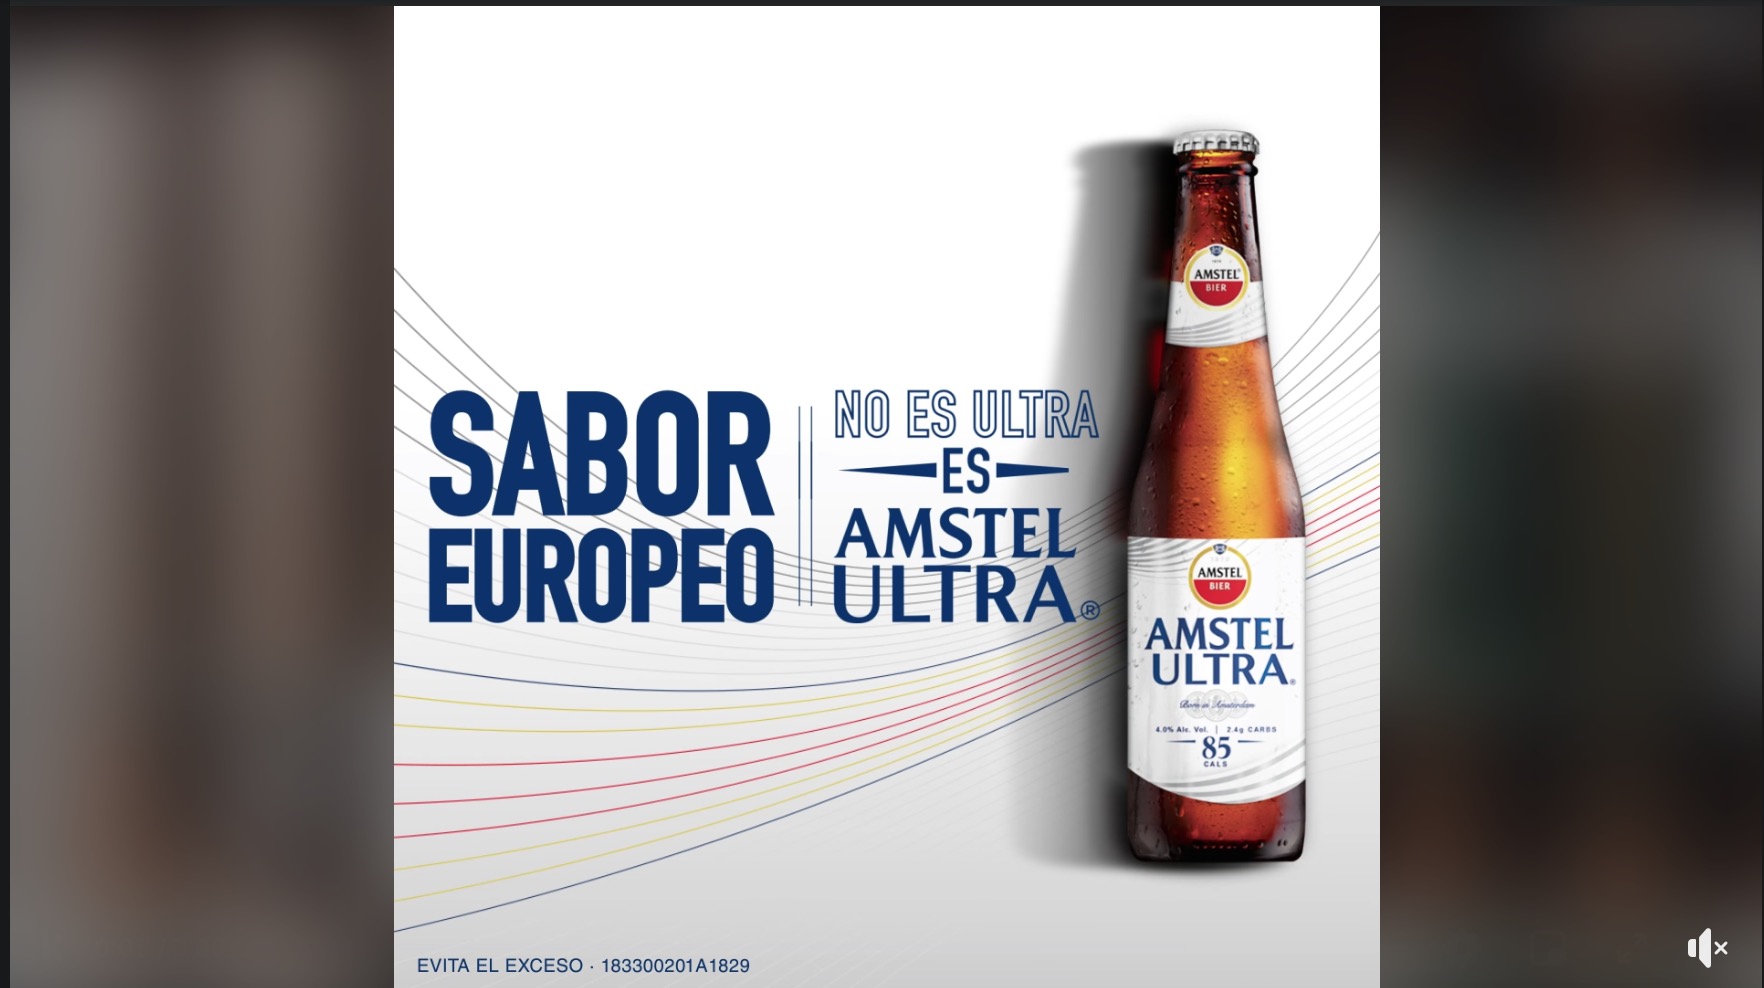 Amstel busca ganarle terreno a Grupo Modelo con esta campaña